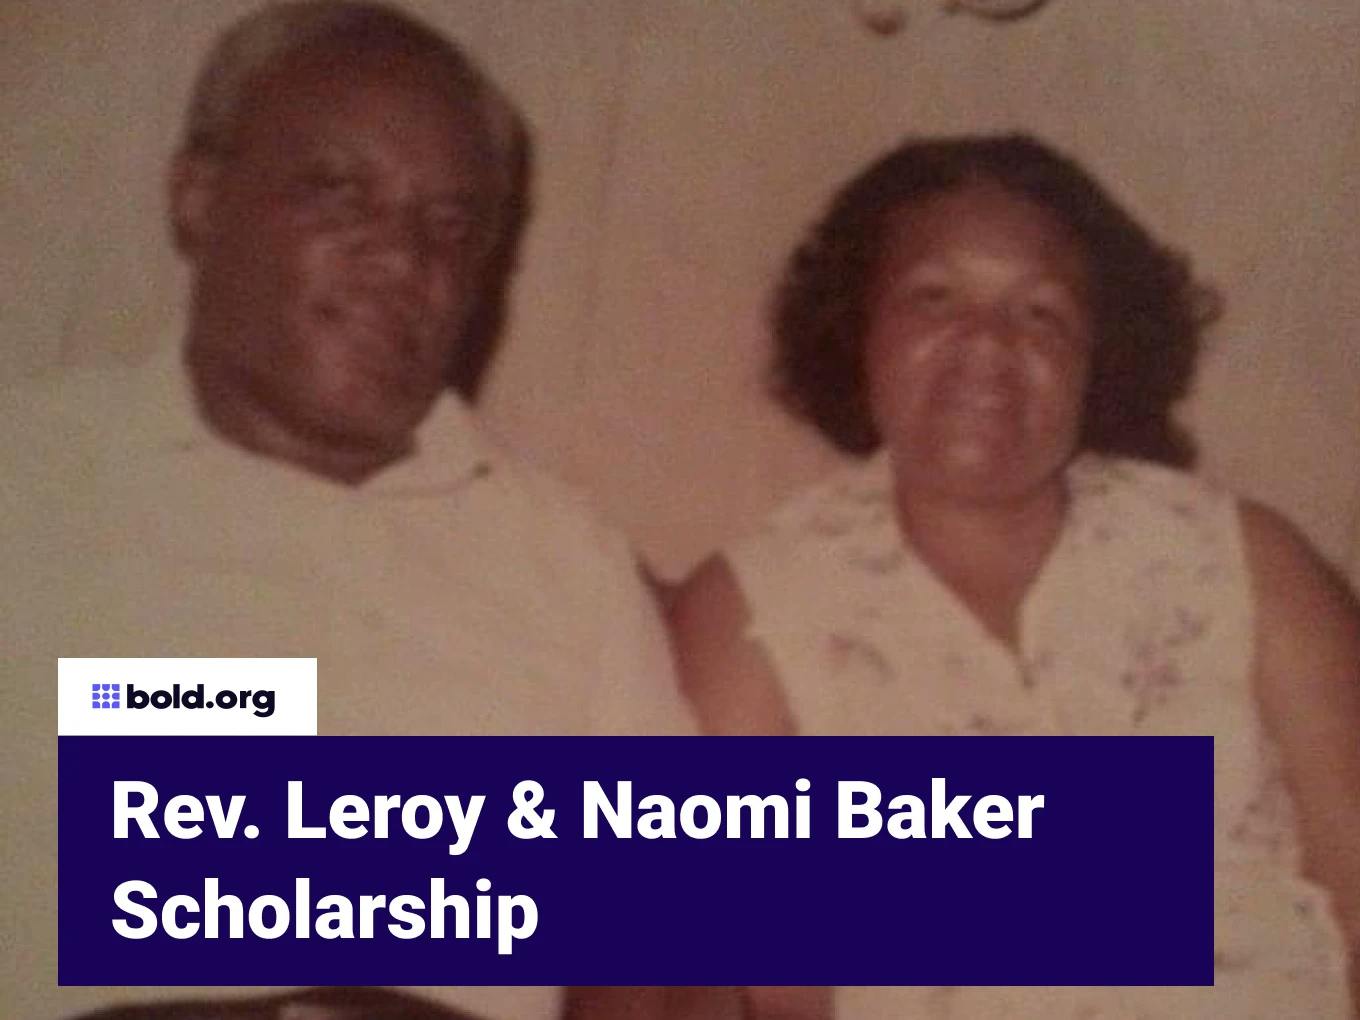 Rev. Leroy & Naomi Baker Memorial Scholarship